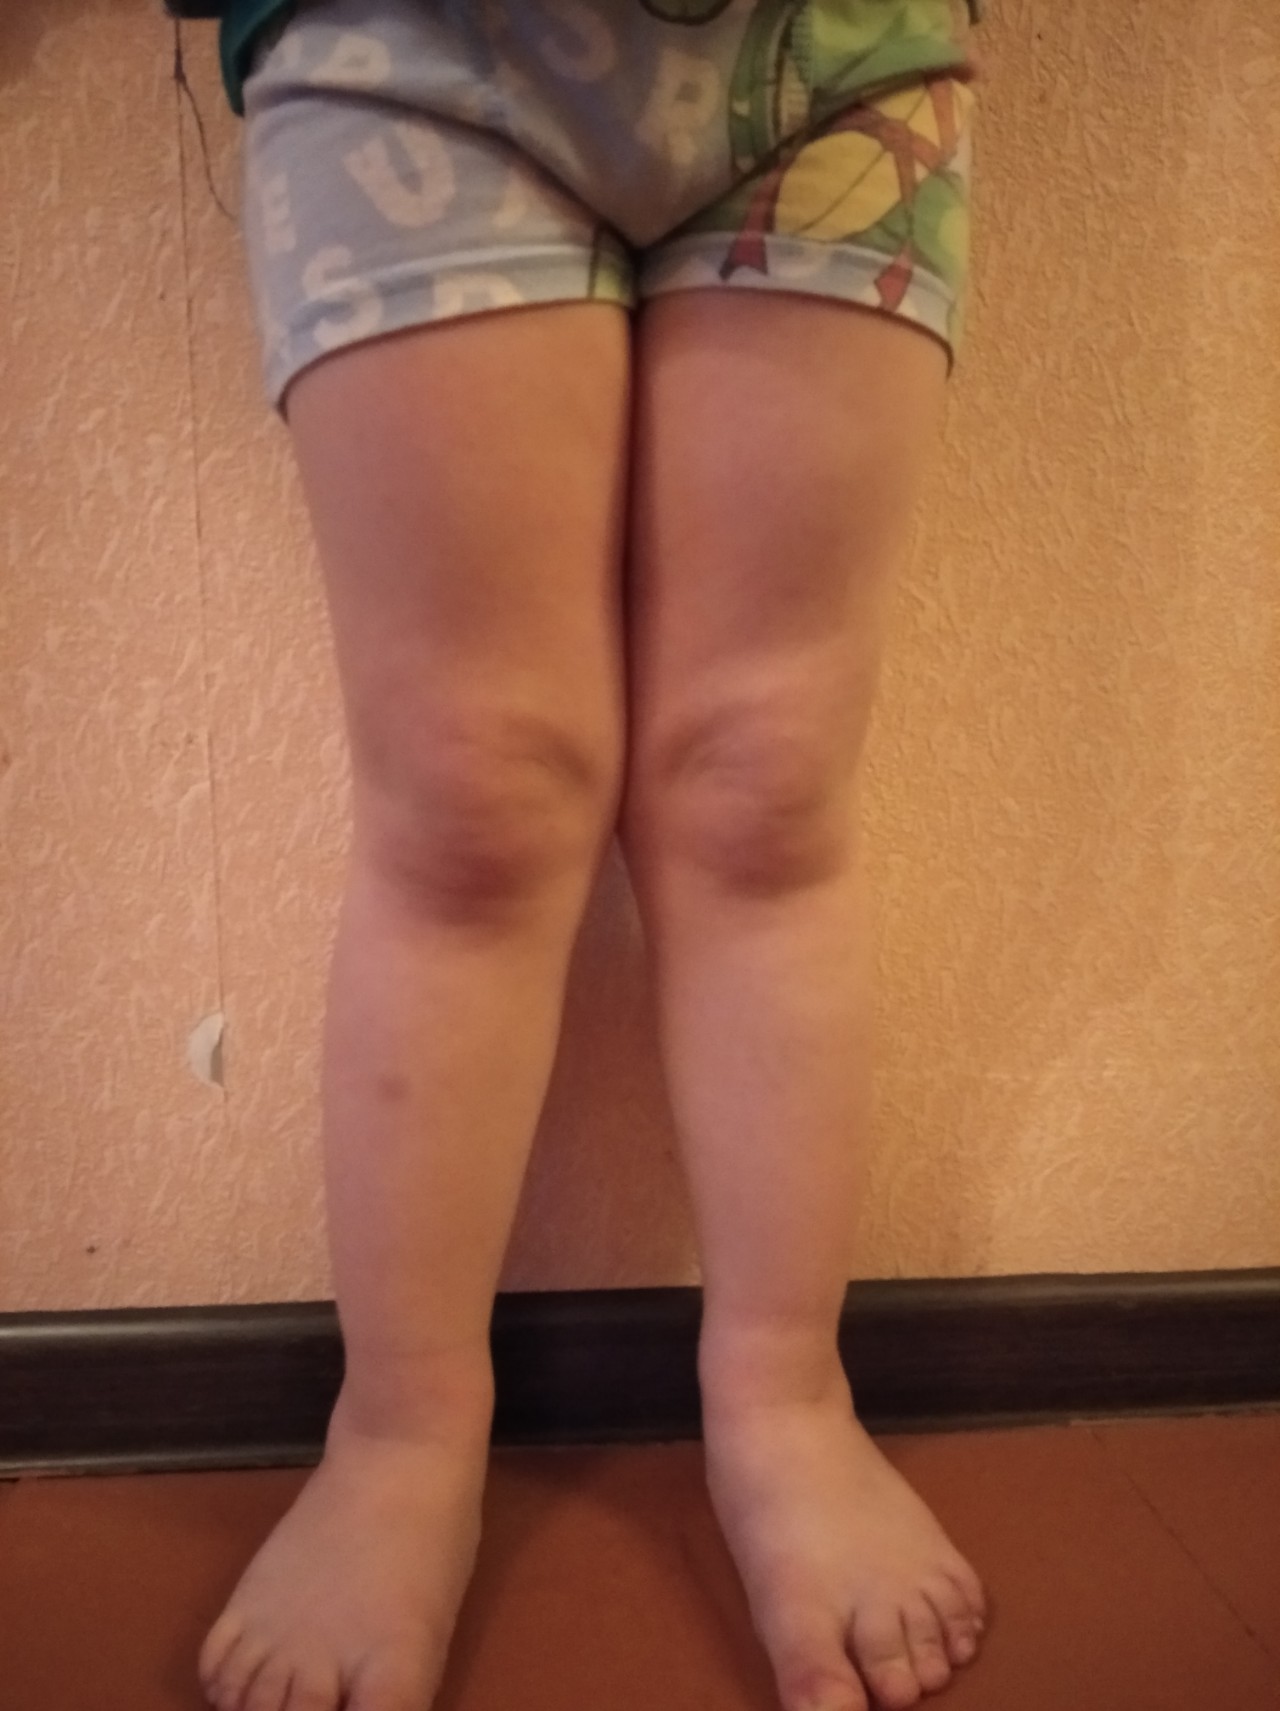 Вальгусная деформация коленных суставов